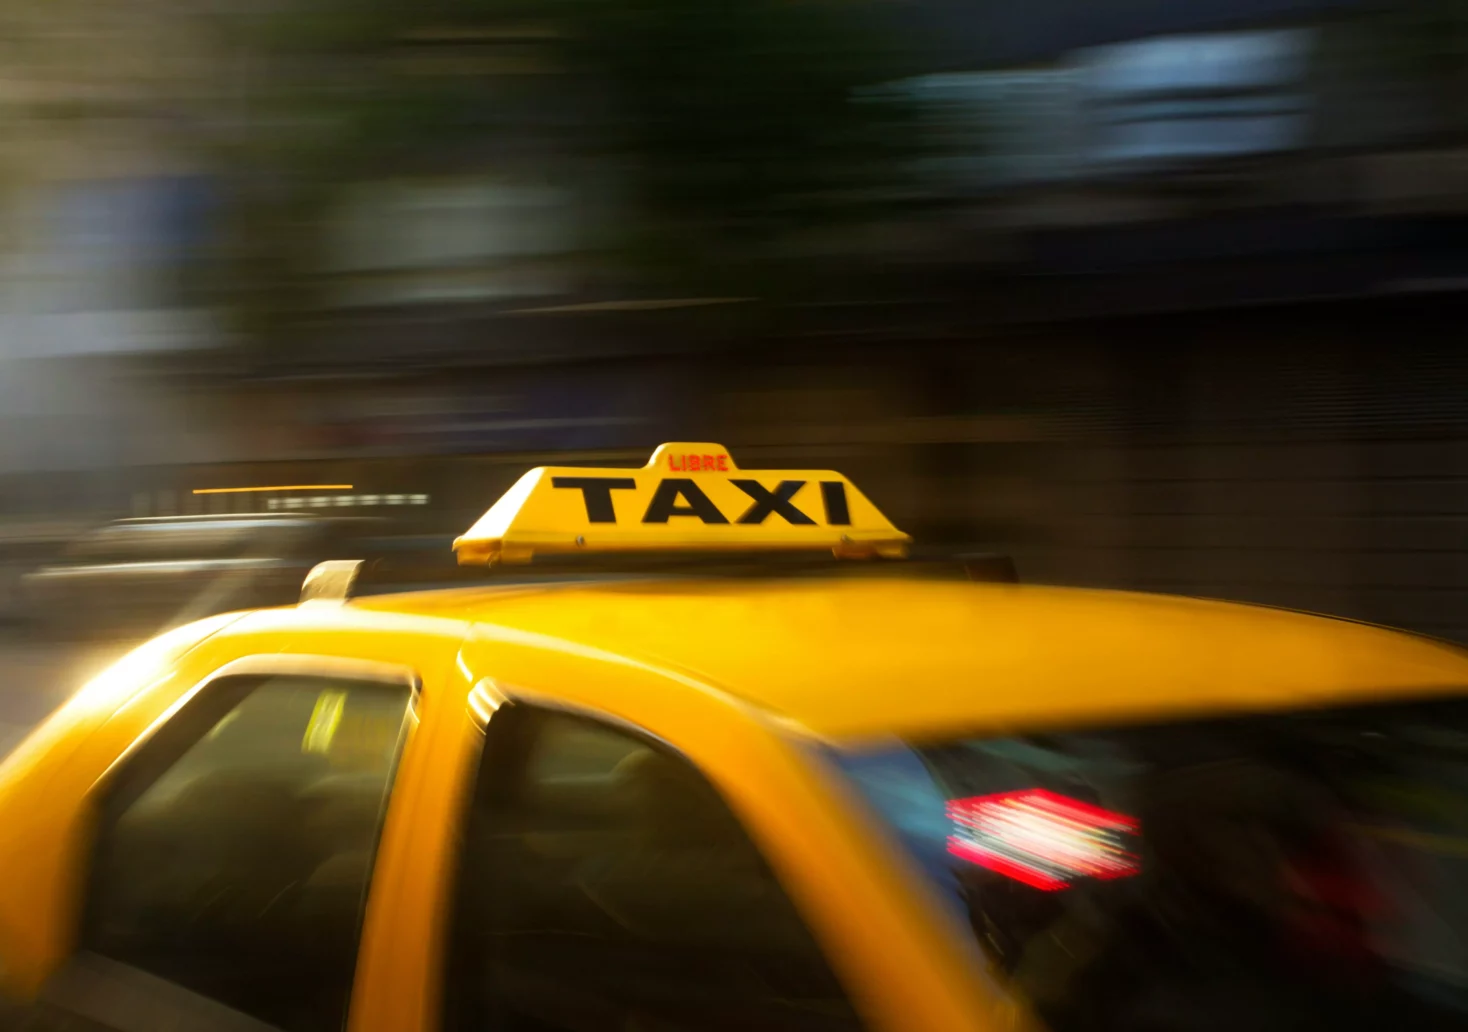 Bild auf 5min.at zeigt ein Taxi.